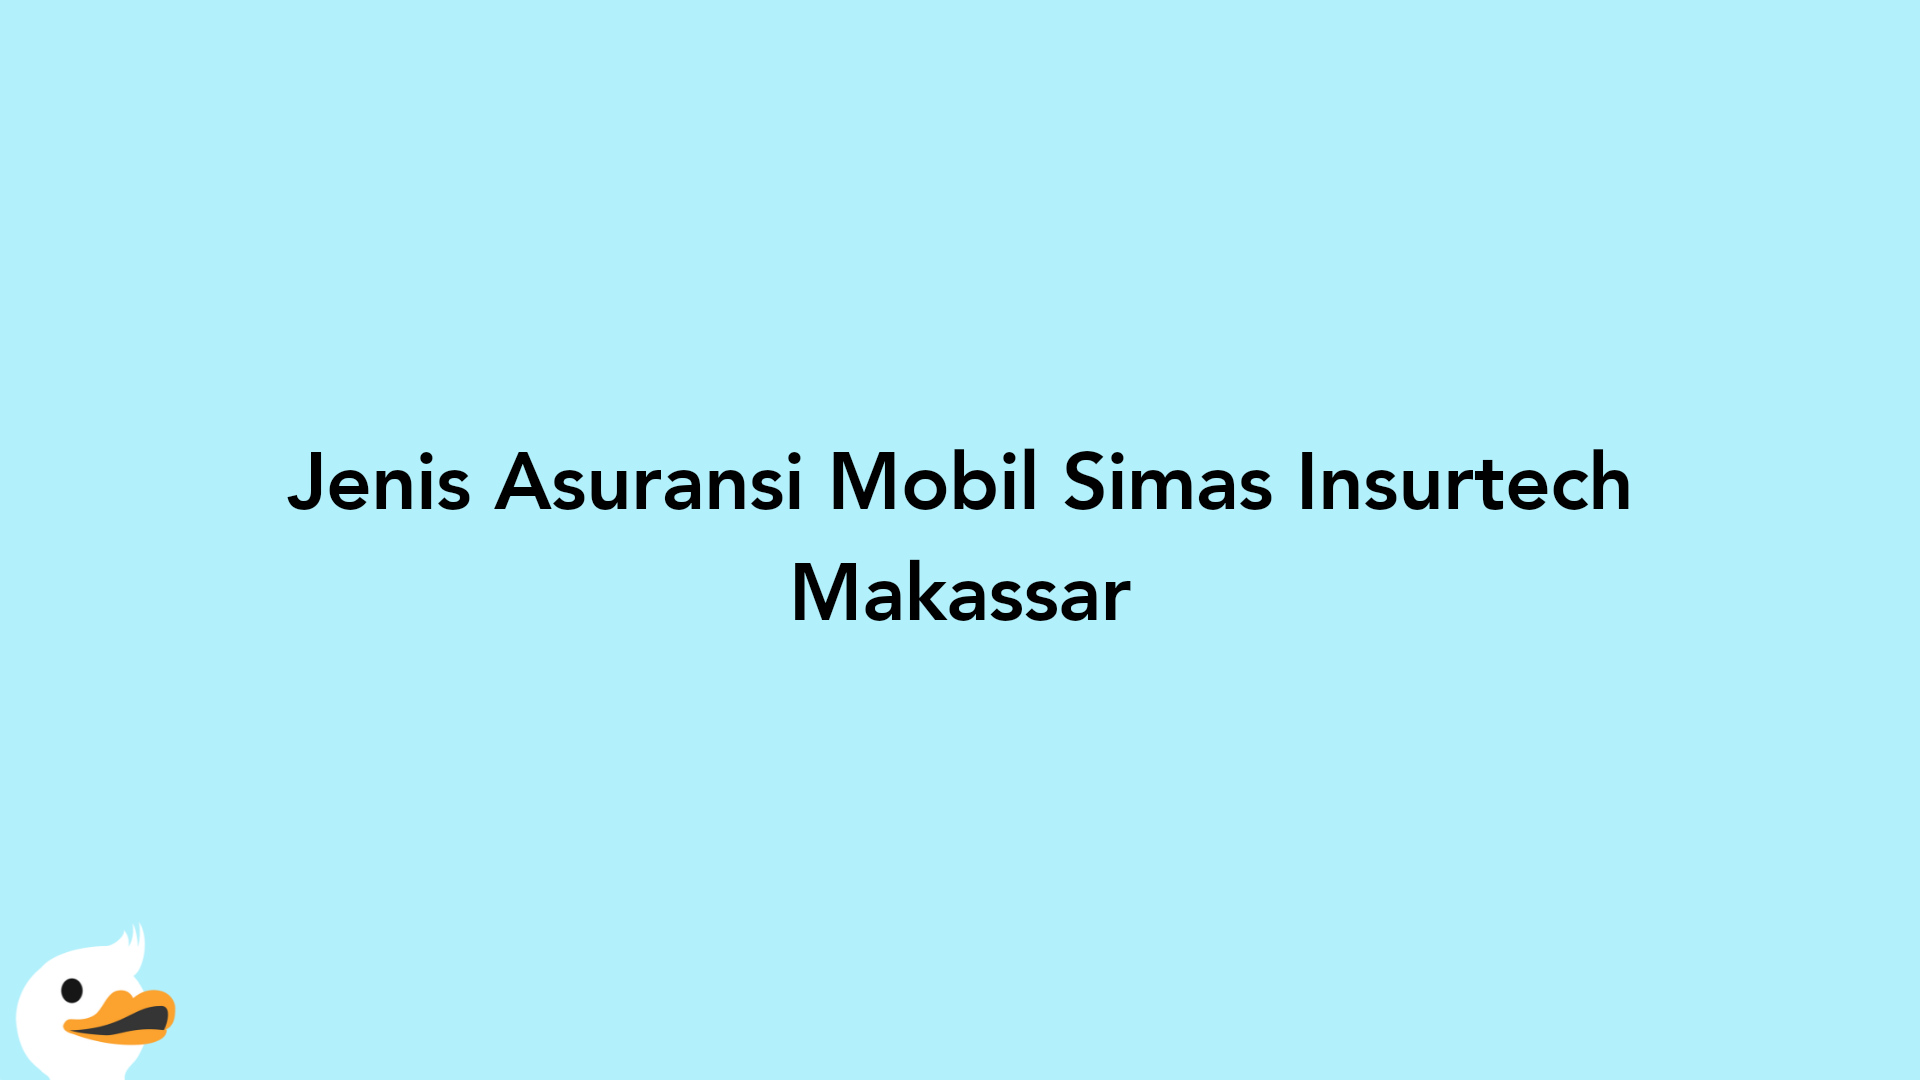 Jenis Asuransi Mobil Simas Insurtech Makassar